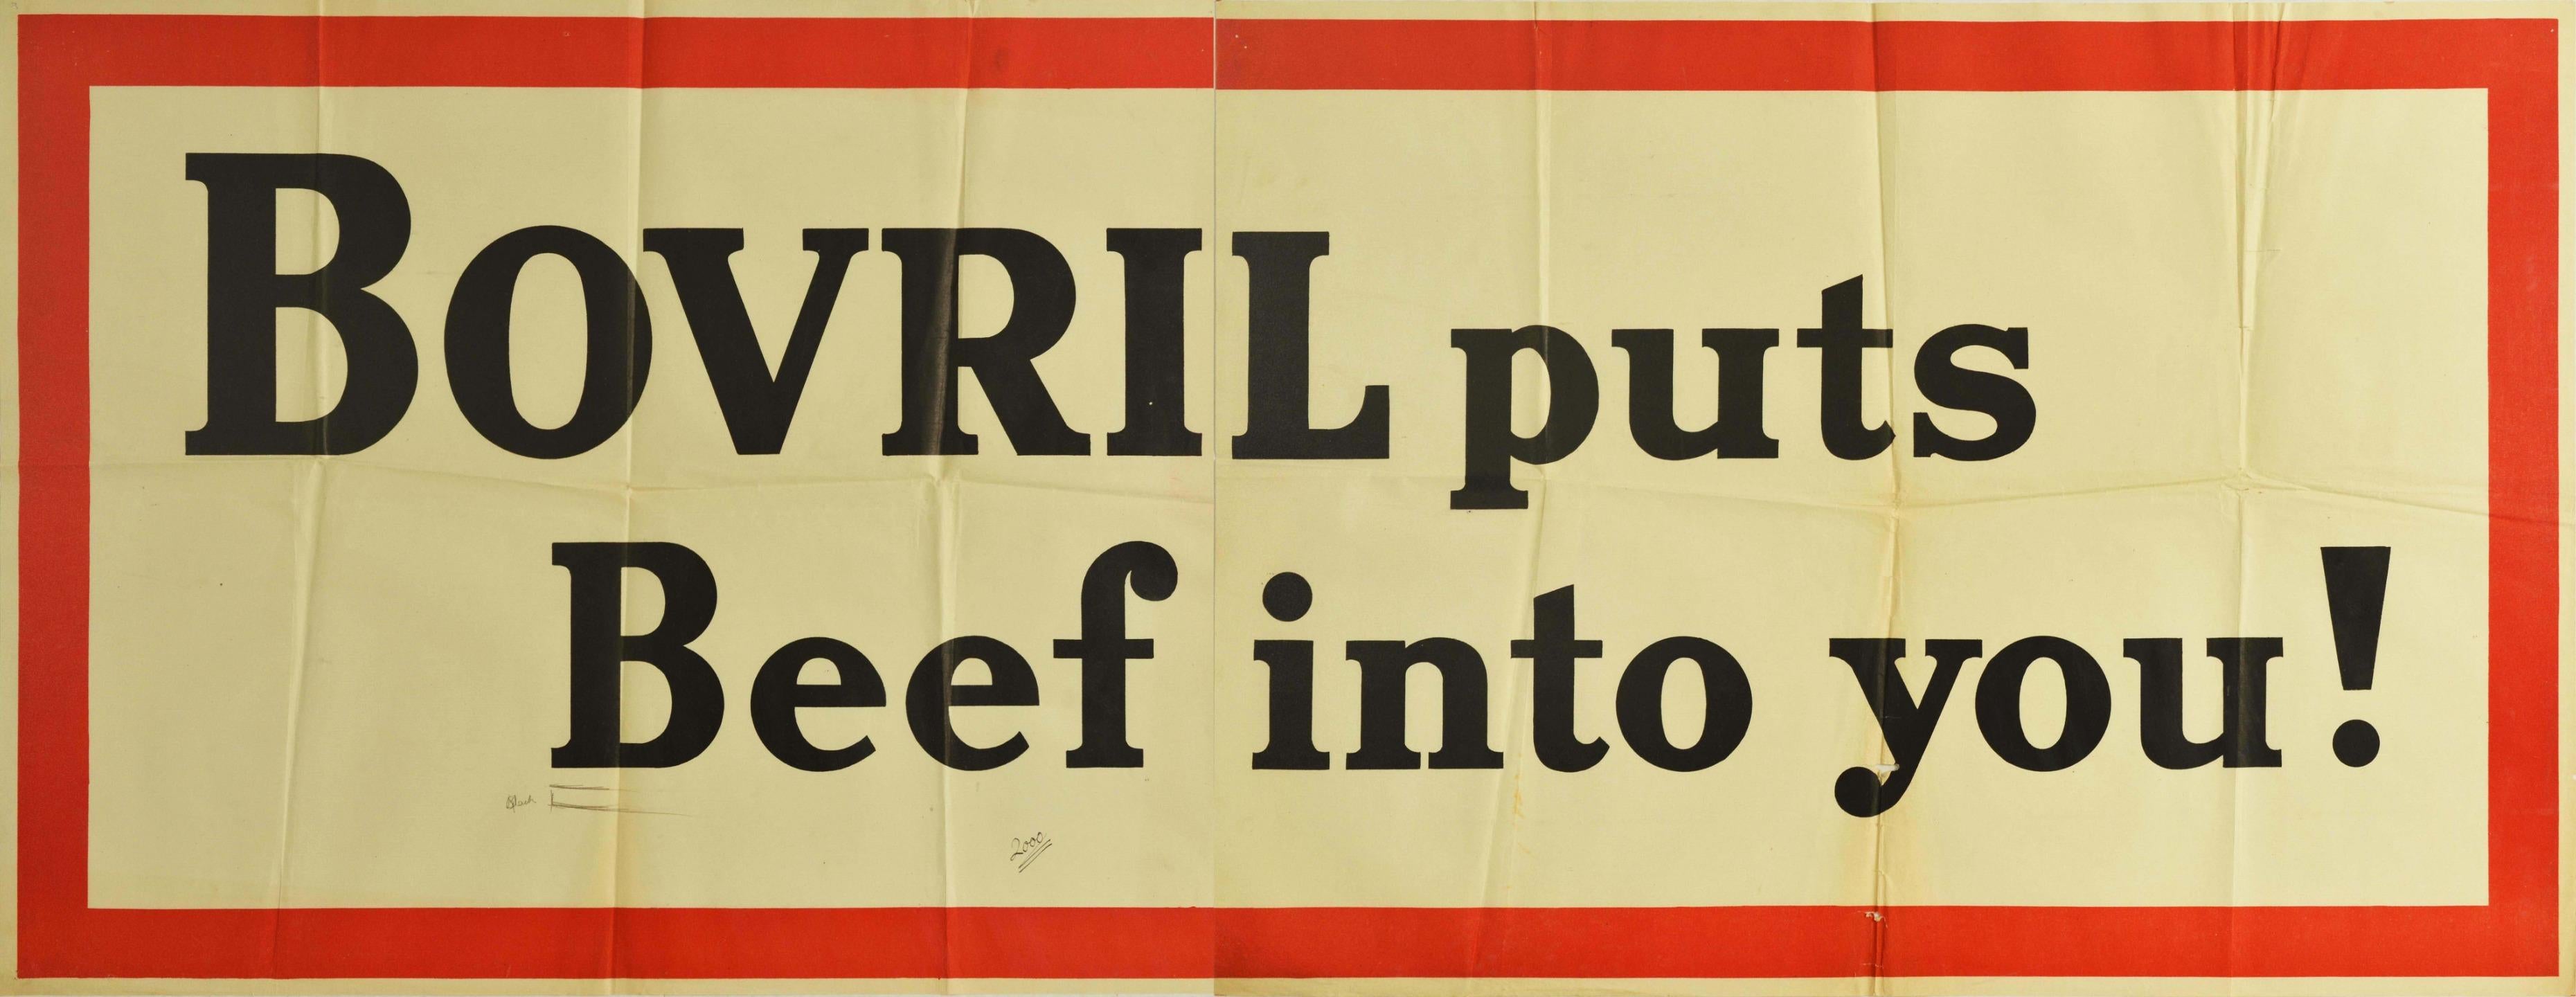 Affiche publicitaire vintage originale pour Bovril - Bovril puts Beef into you ! - avec des caractères noirs gras sur un fond blanc dans un cadre rouge épais. Imprimée en Grande-Bretagne dans les années 30, cette campagne utilise des jeux de mots et